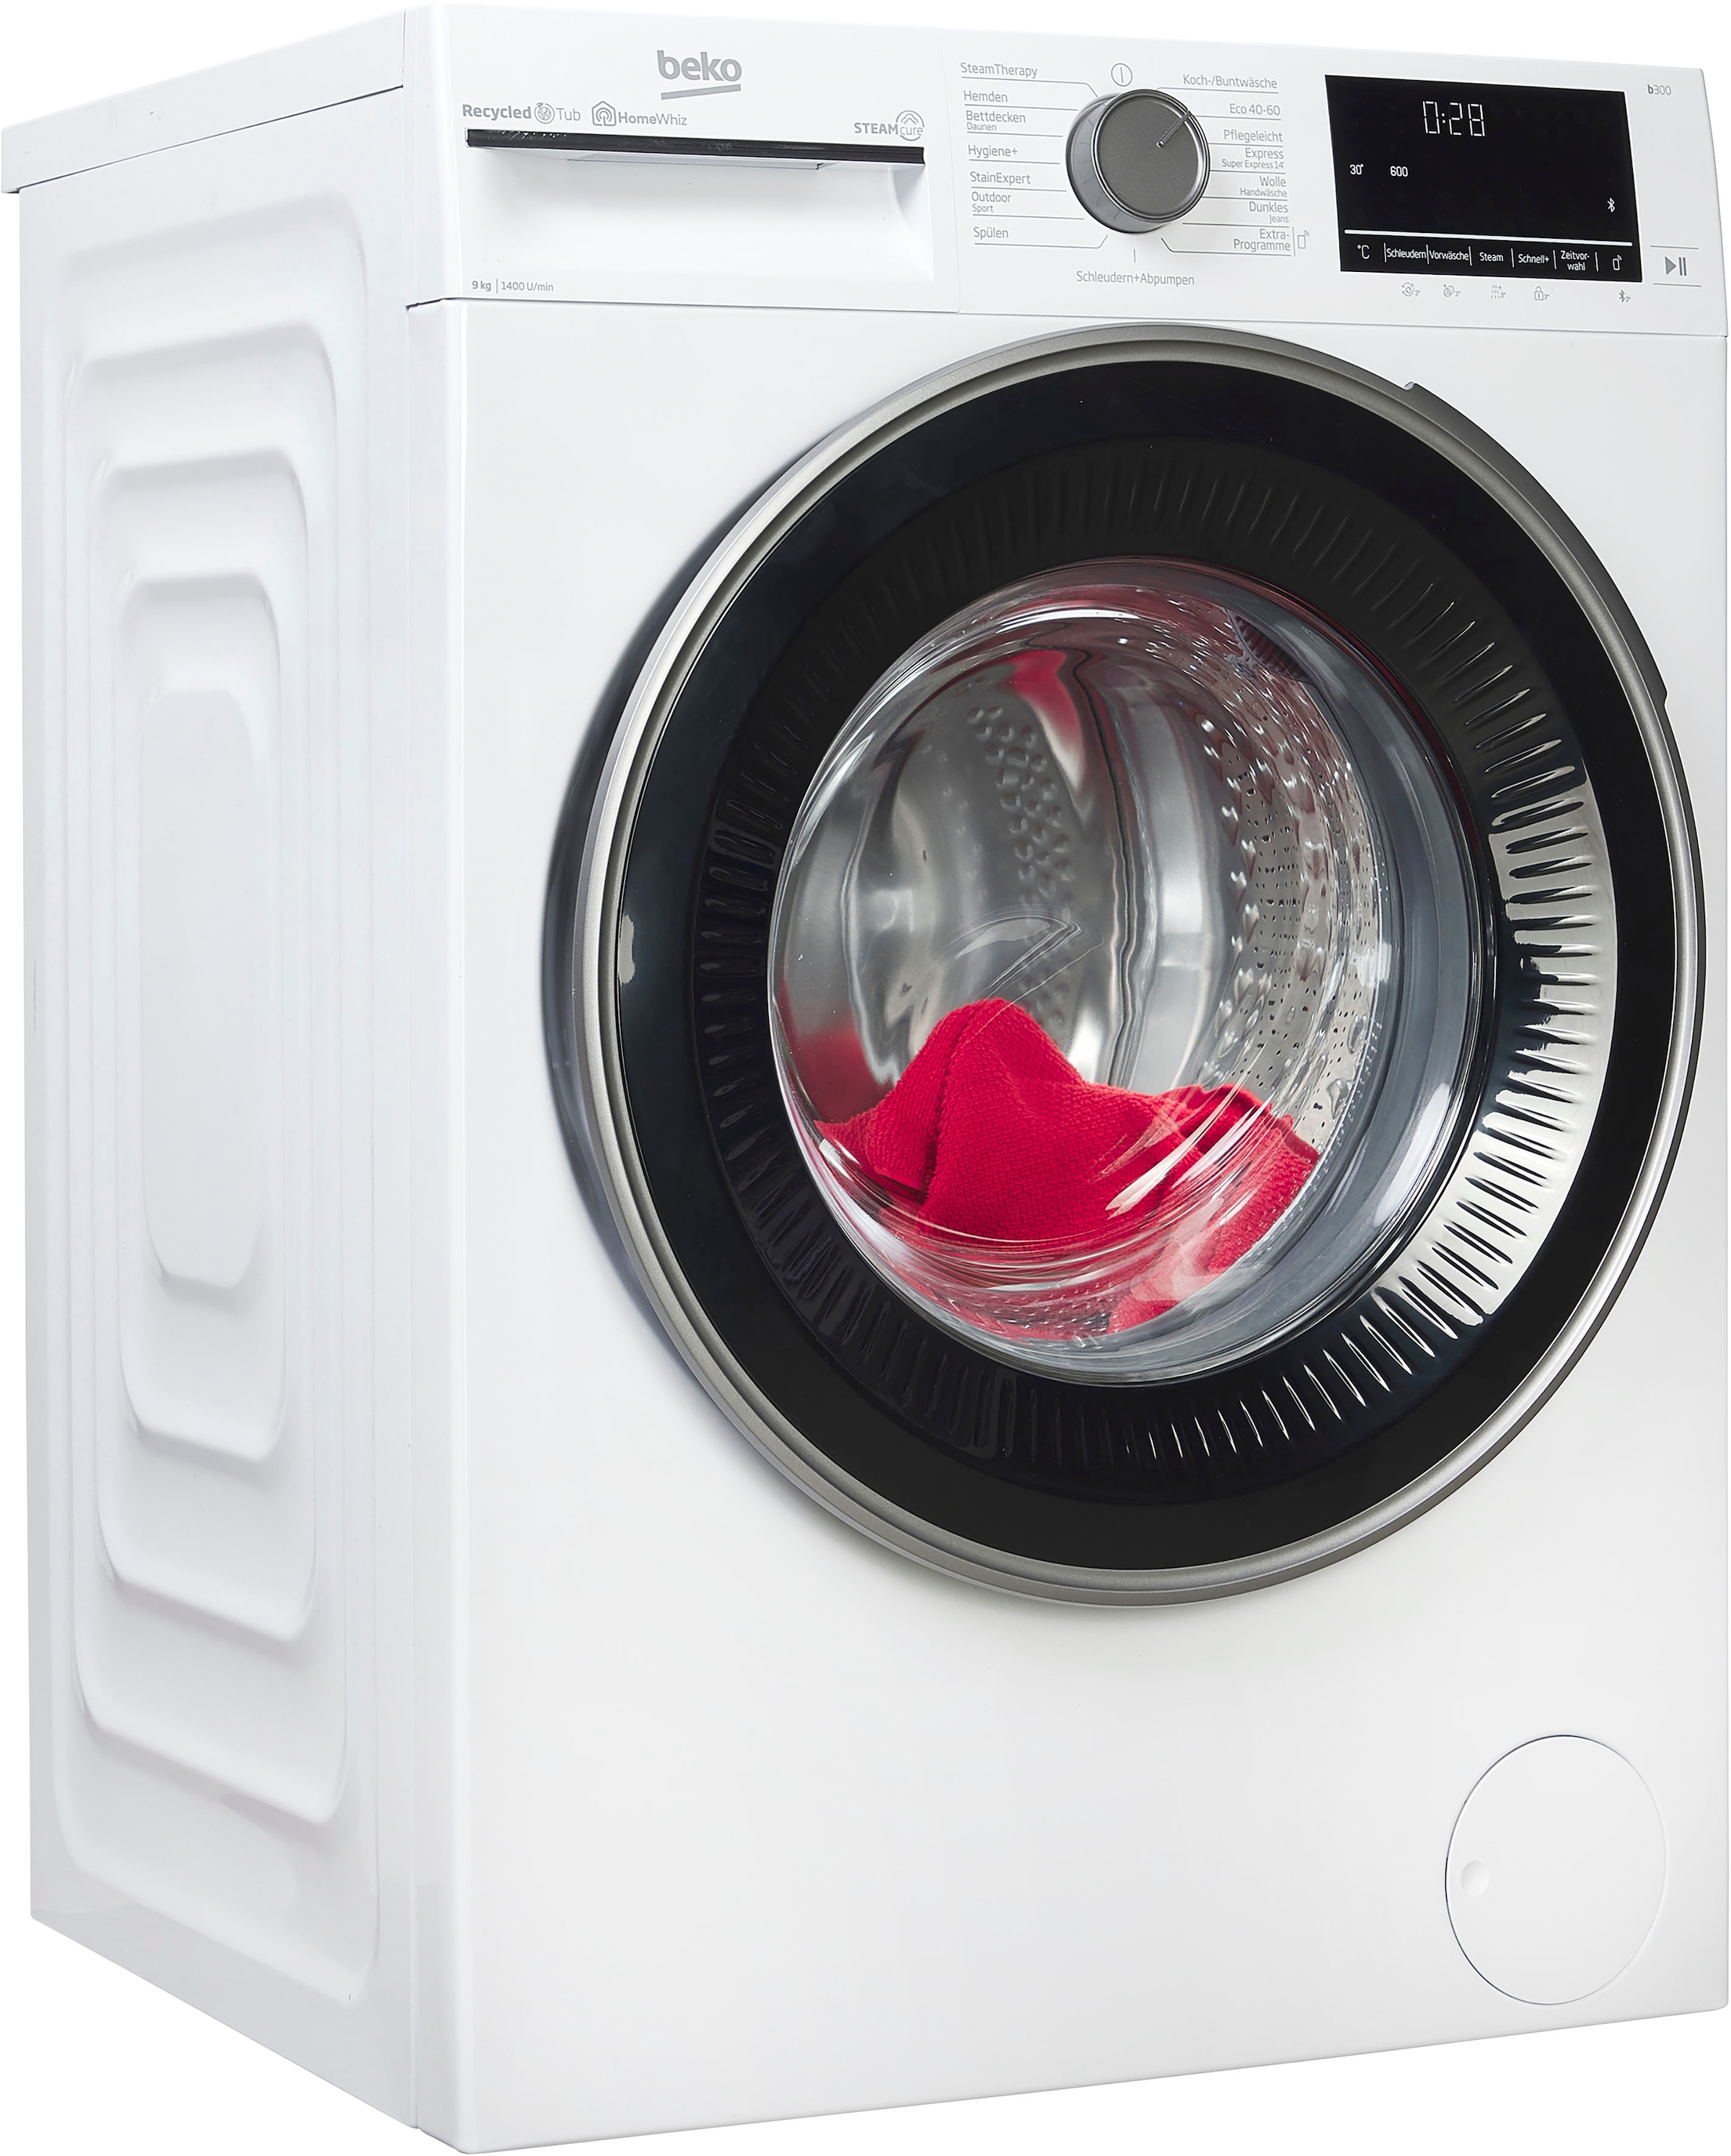 Waschmaschine, b300, B3WFU59415W2, 9 kg, 1400 U/min, SteamCure - 99% allergenfrei